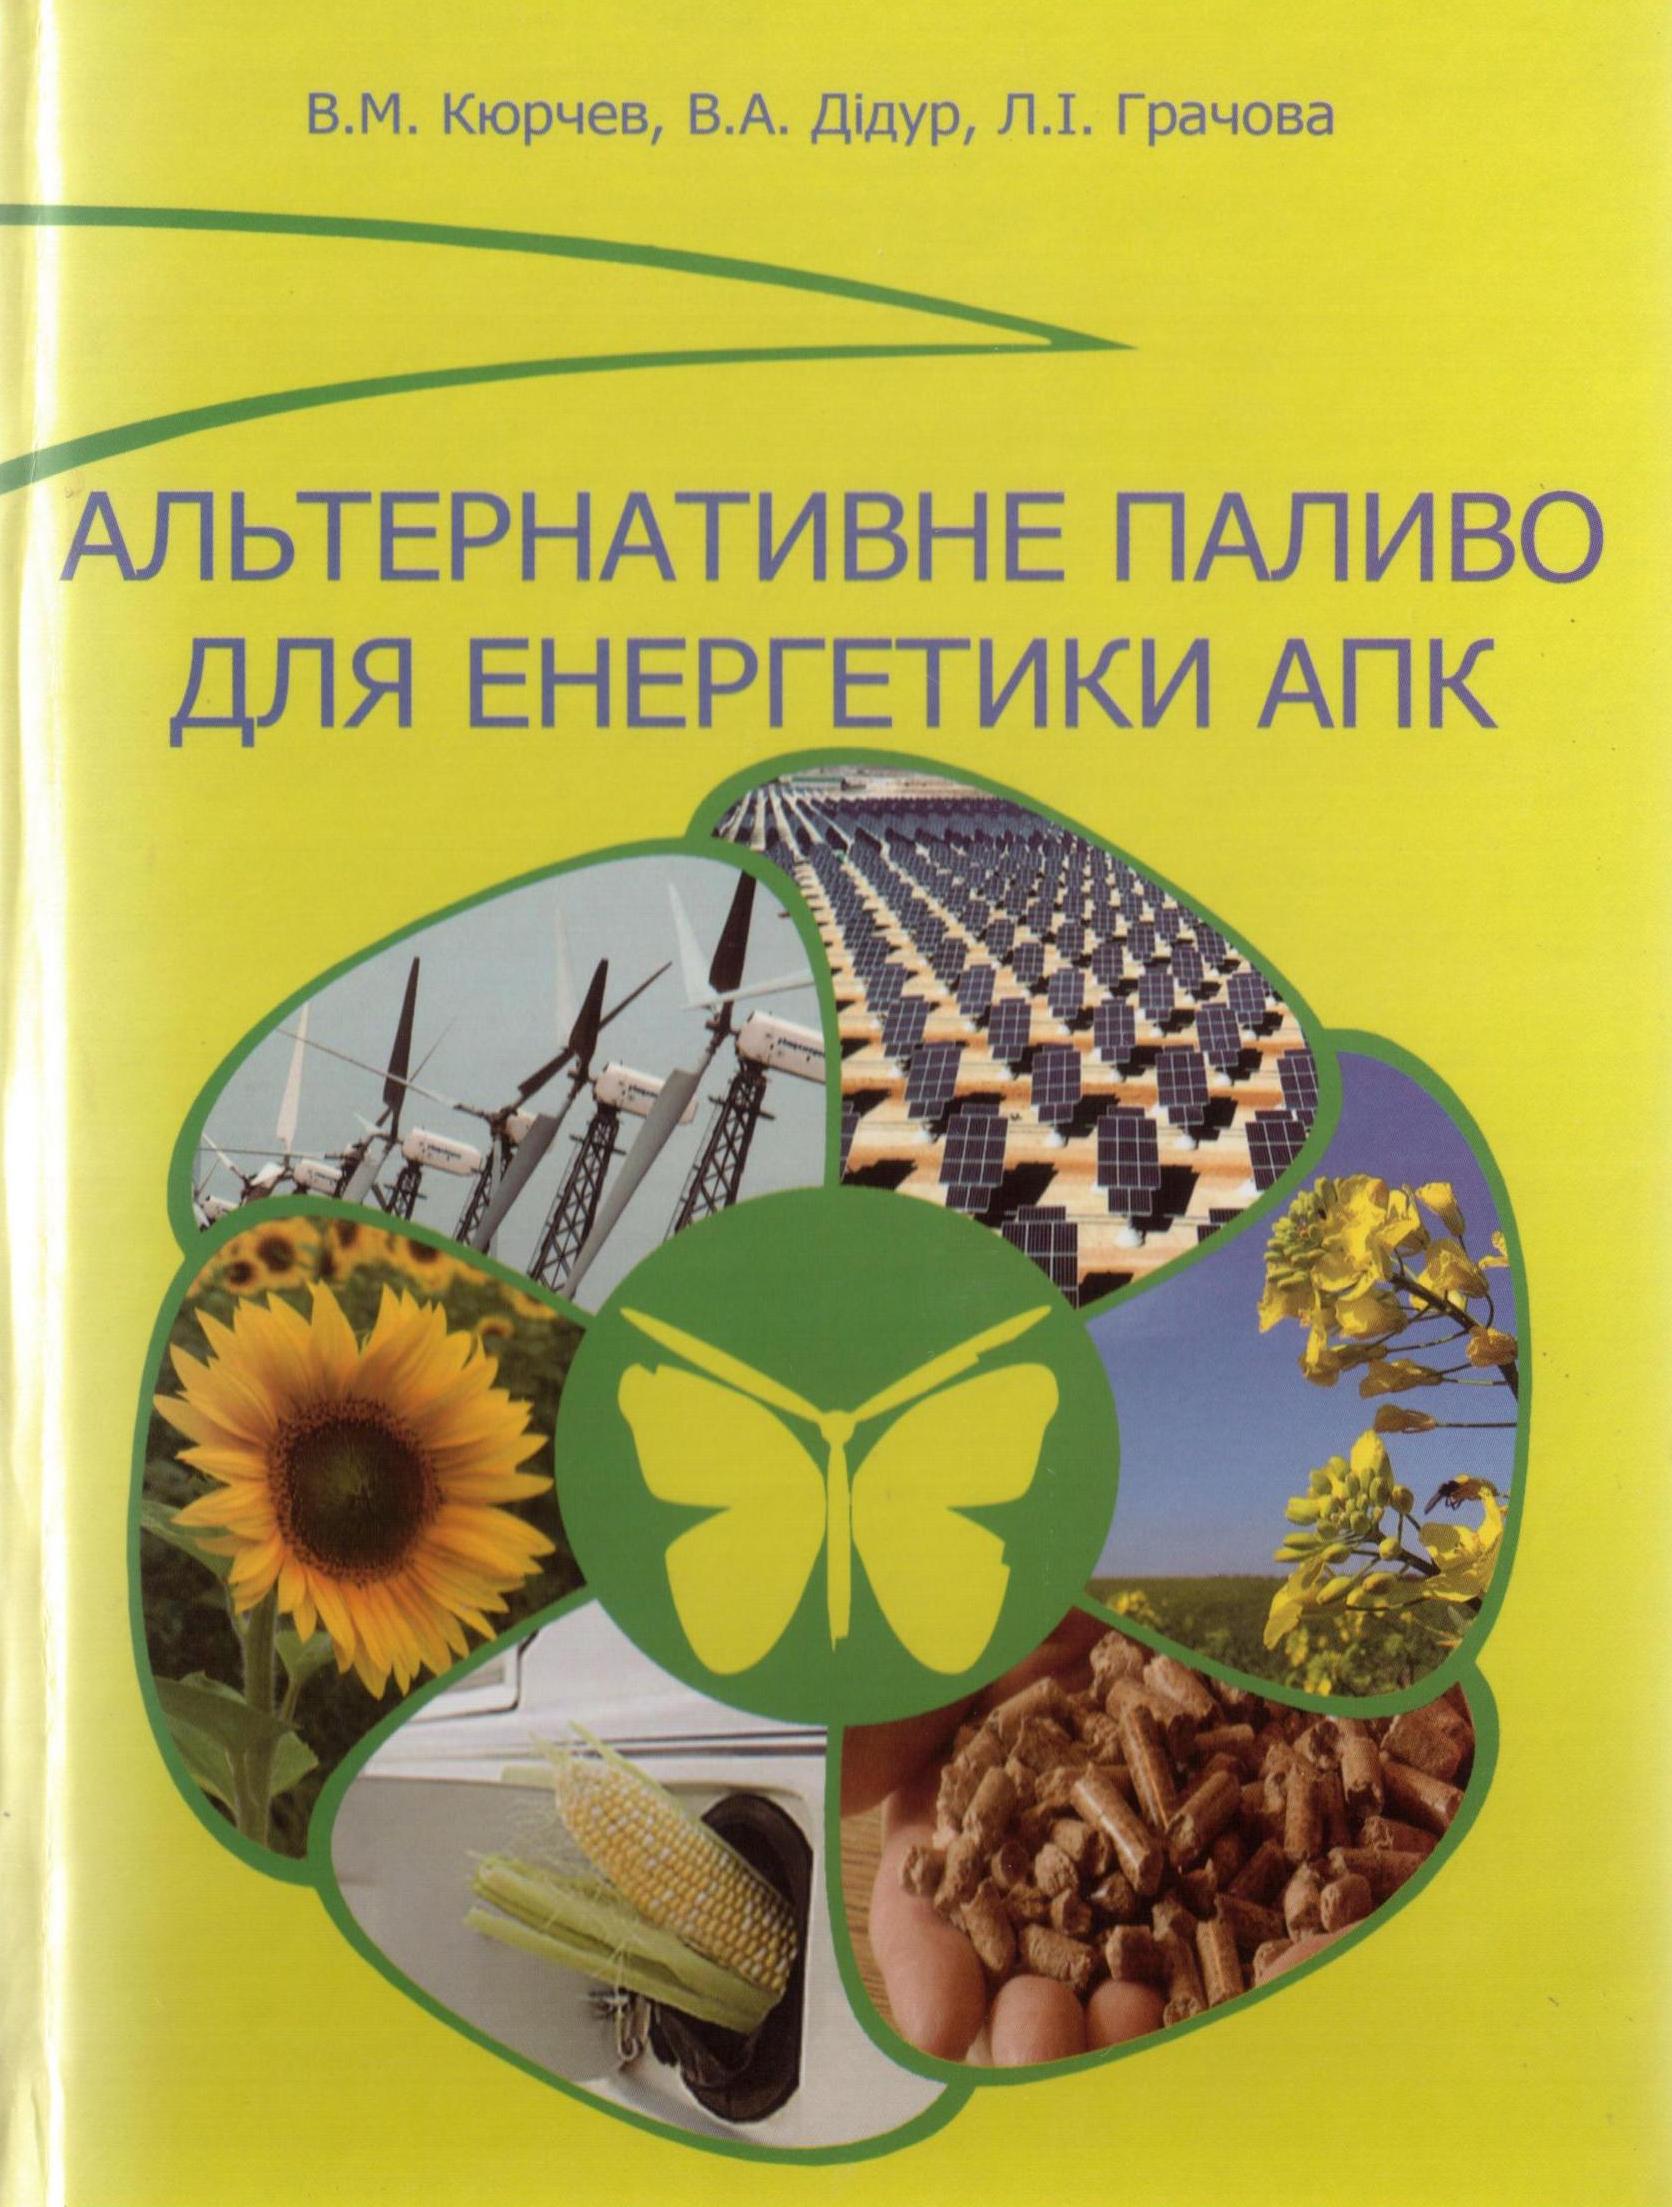 Обложка Альтернативне паливо для енергетики АПК Кюрчев В.М., Дідур В.А.. 2012